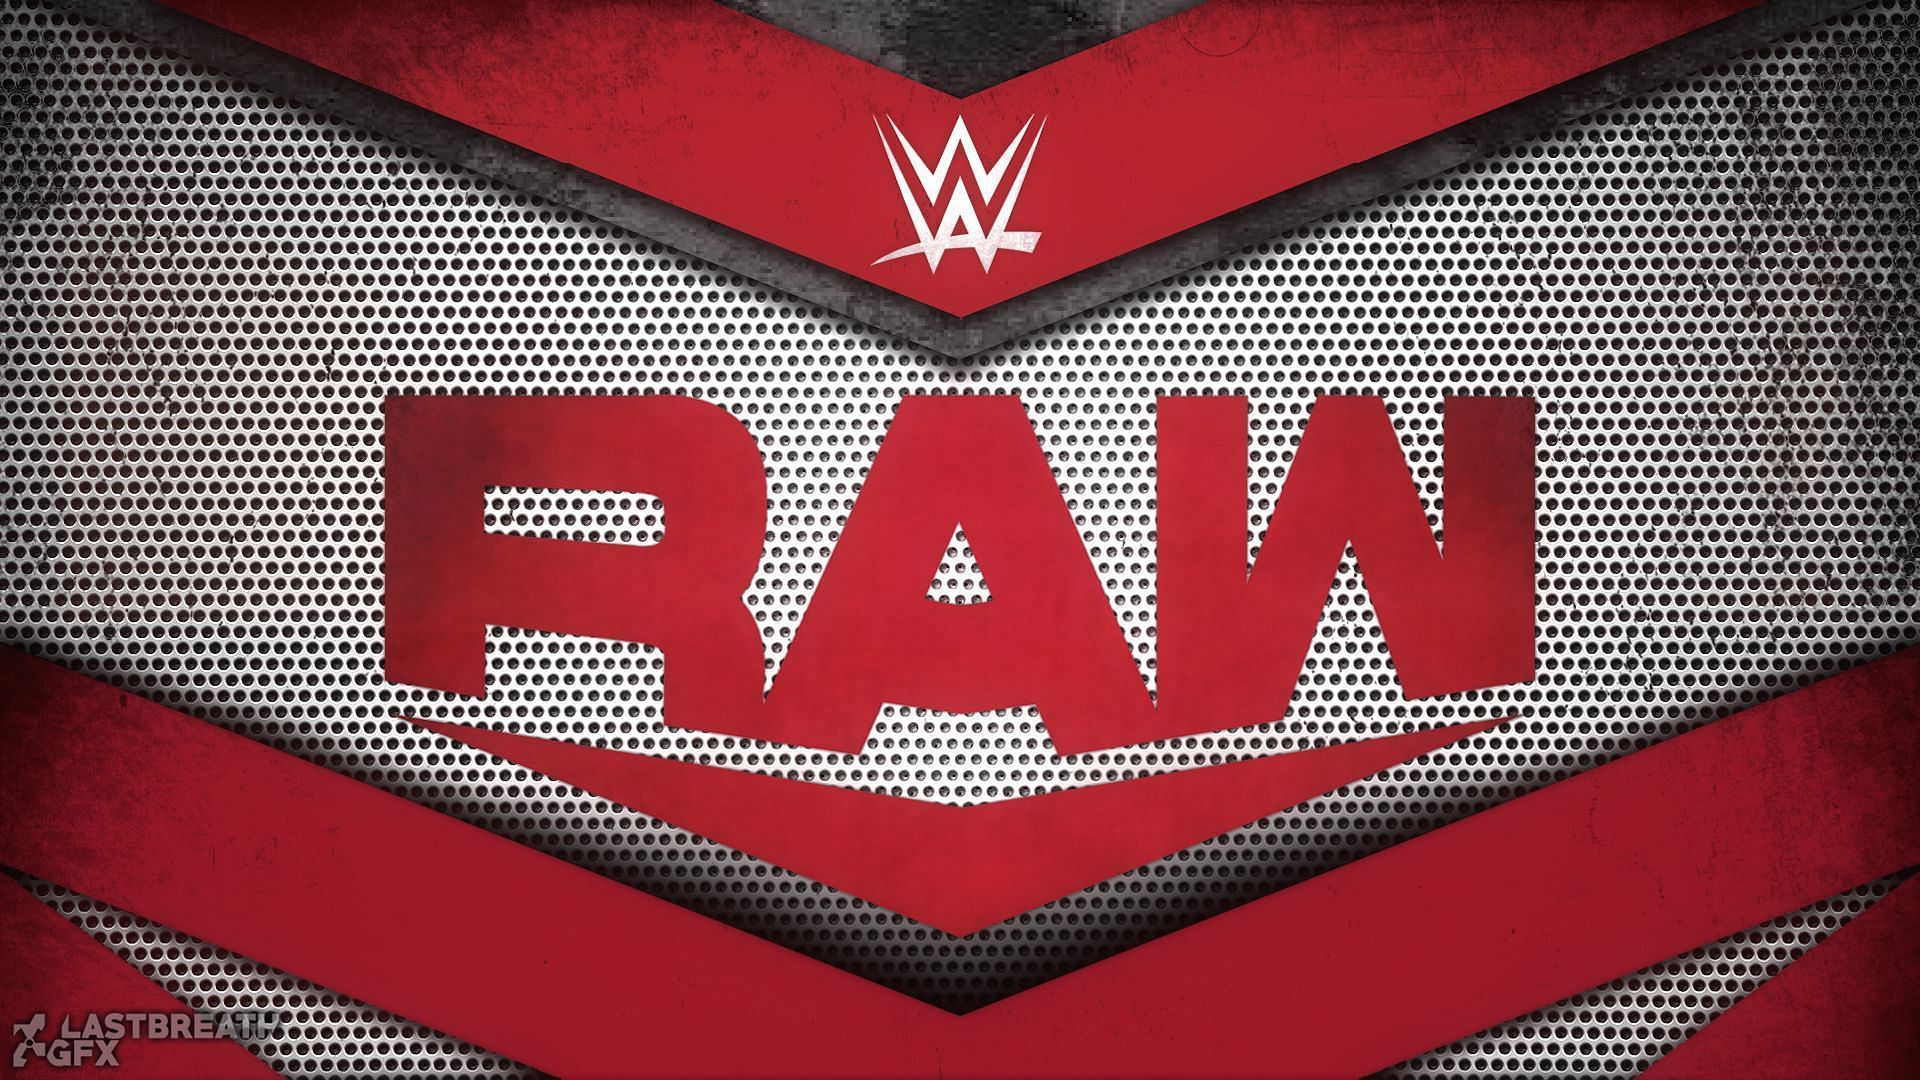 WWE Raw में इस हफ्ते कुछ तगड़े मुकाबले देखने को मिले